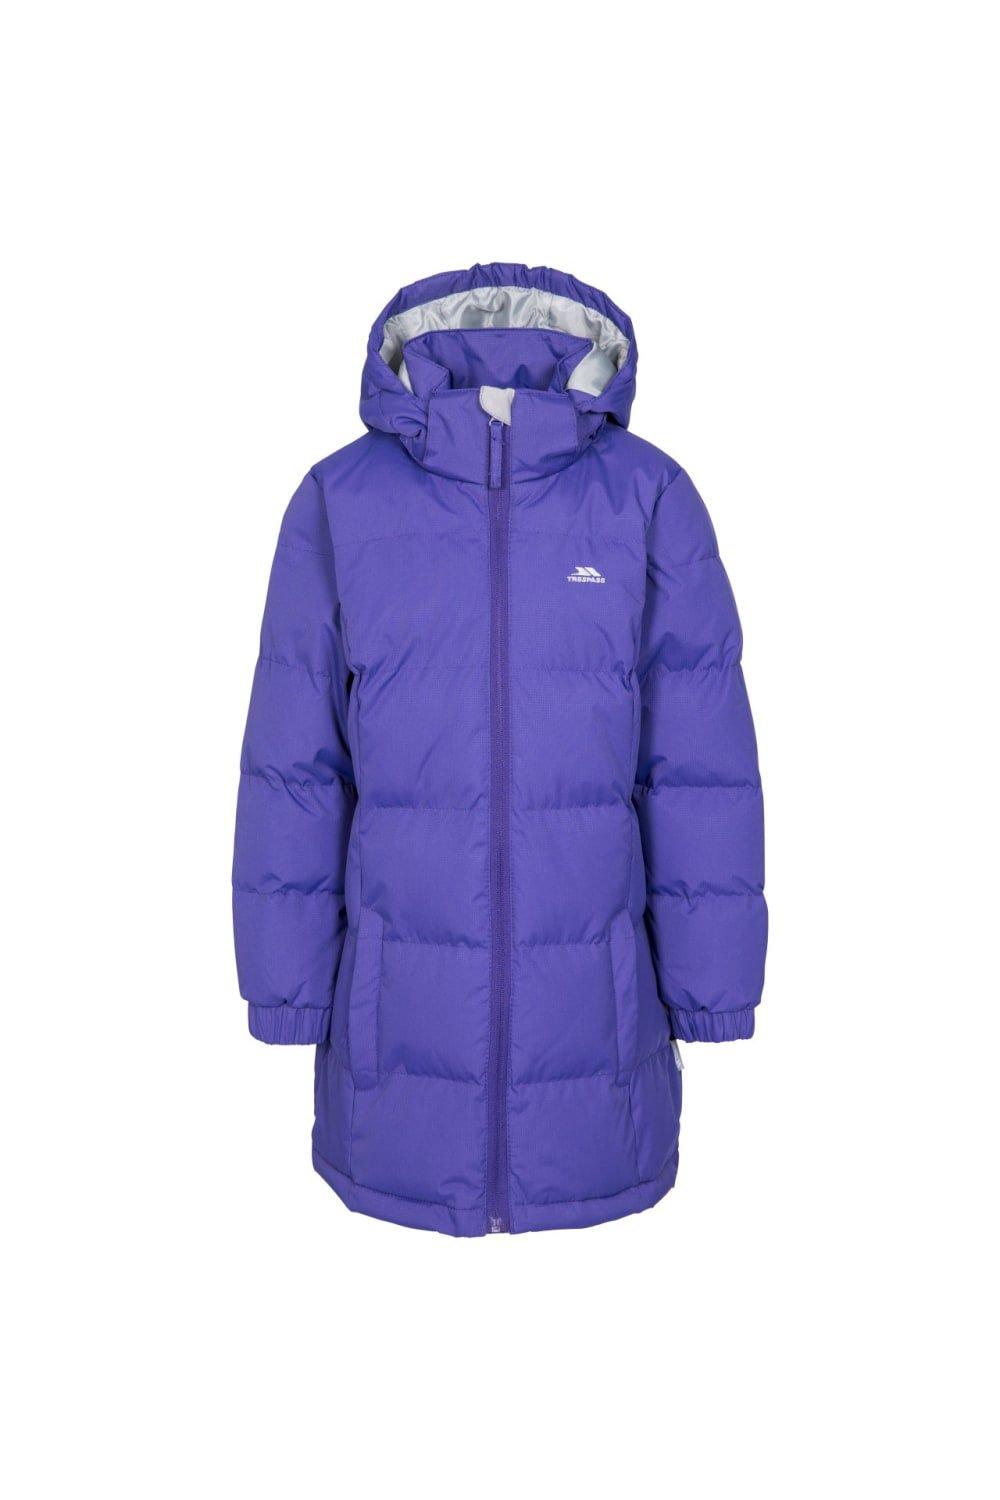 Стеганая куртка Tiffy Trespass, фиолетовый